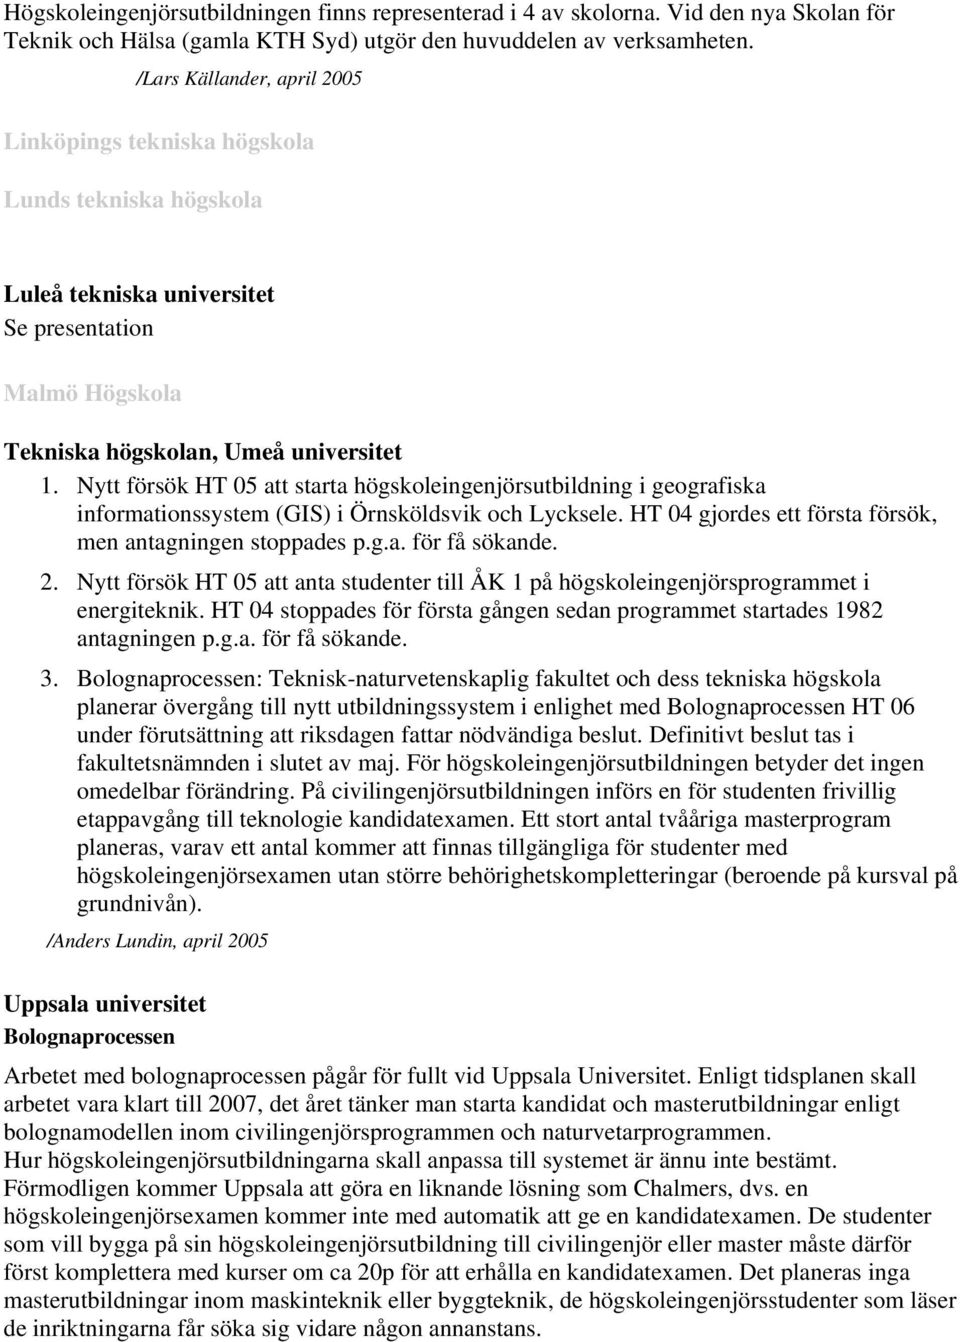 Nytt försök HT 05 att starta högskoleingenjörsutbildning i geografiska informationssystem (GIS) i Örnsköldsvik och Lycksele. HT 04 gjordes ett första försök, men antagningen stoppades p.g.a. för få sökande.